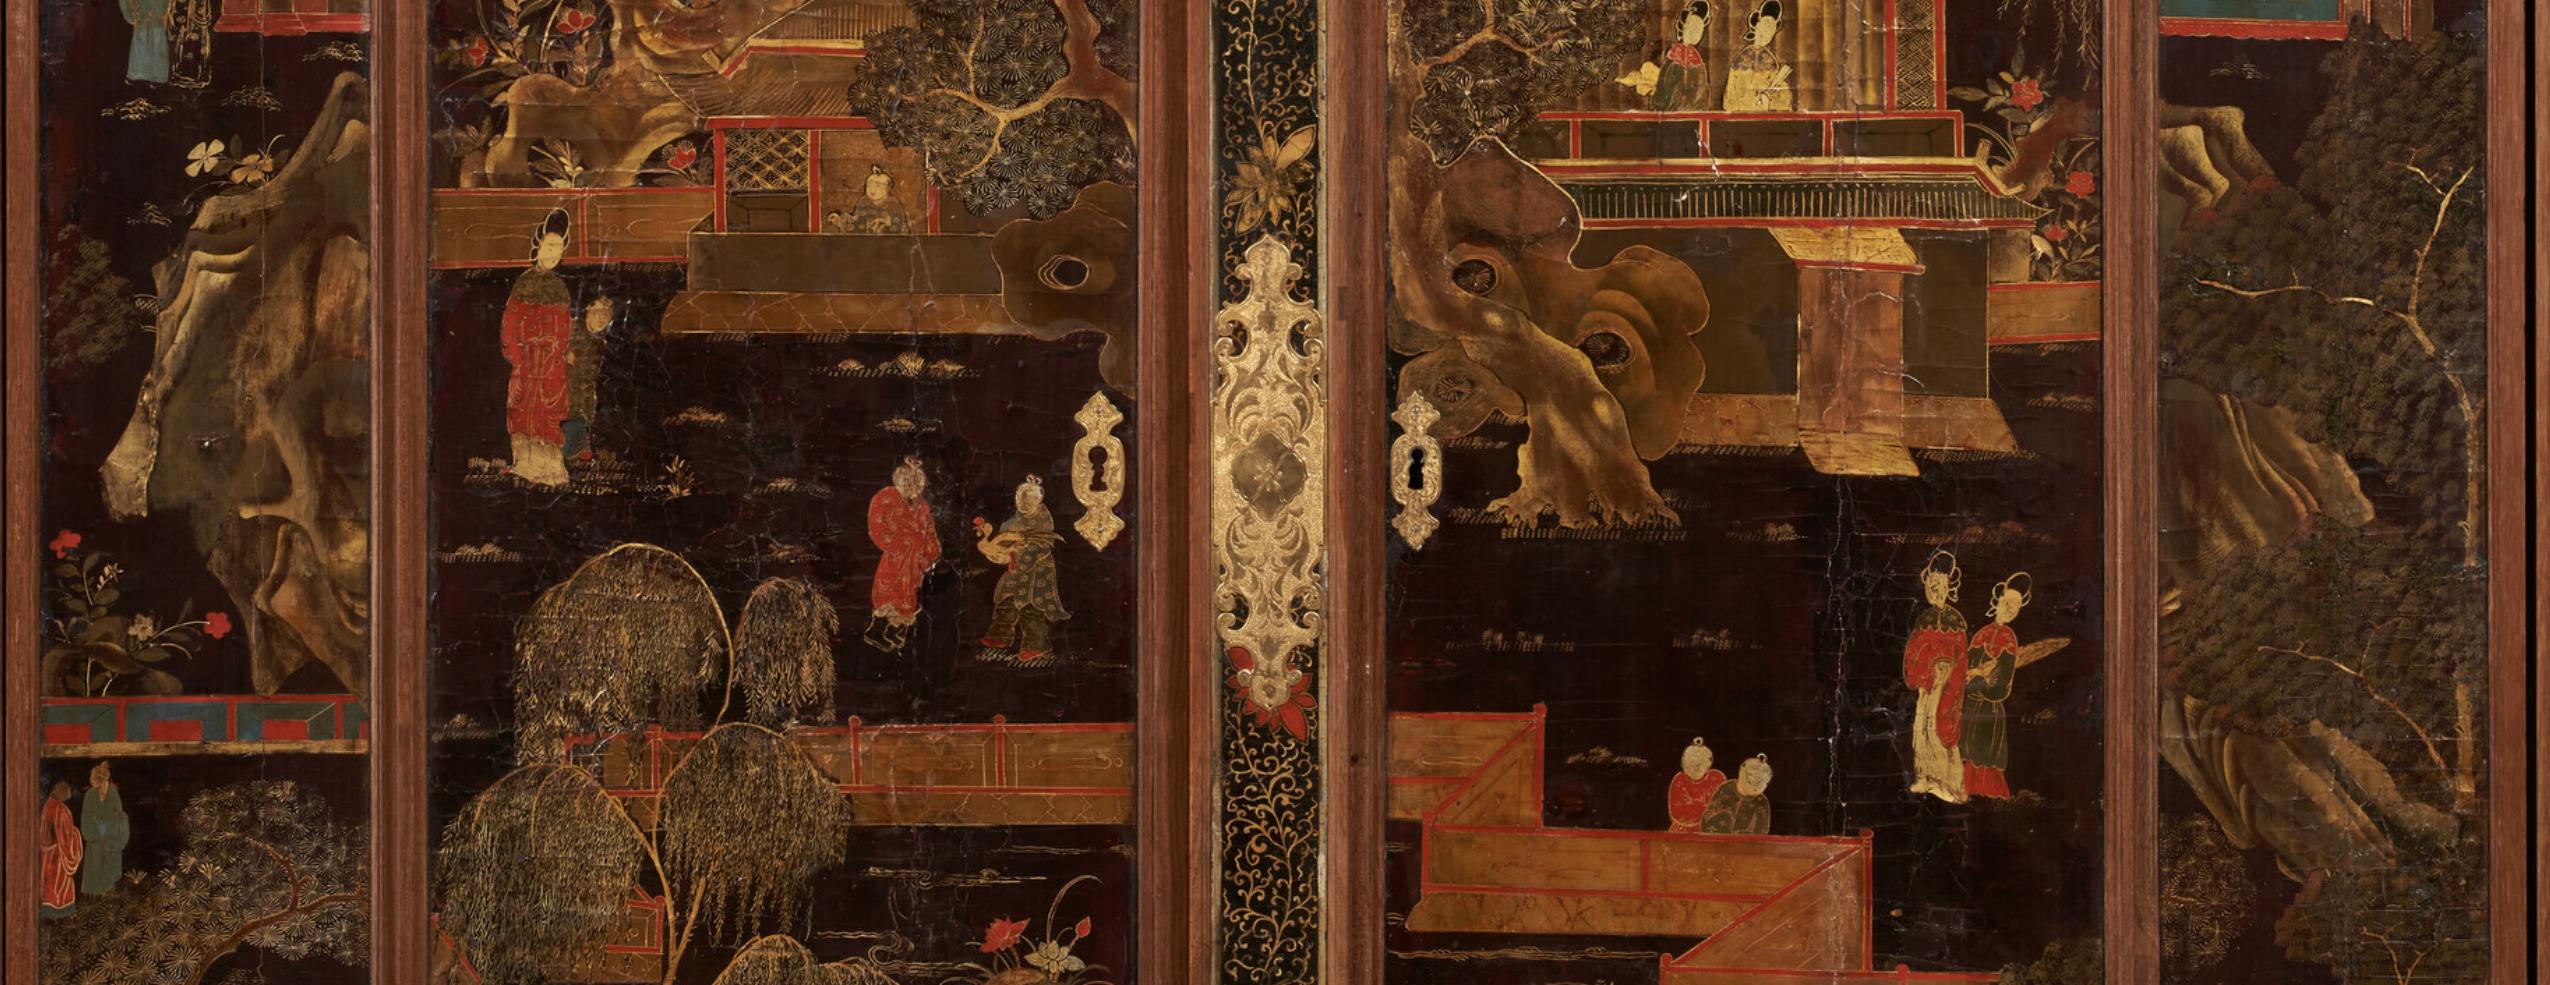 Seltener Schrank aus Tulpenholz und chinesischem Lack von Ludwig XV mit Ormolu-Montierung, um 1750 (Regence-Zeit)

Ein wahrhaft prächtiger, monumentaler und einzigartiger Schrank, durchgehend mit vergoldetem und polychromem chinesischen Lack aus dem